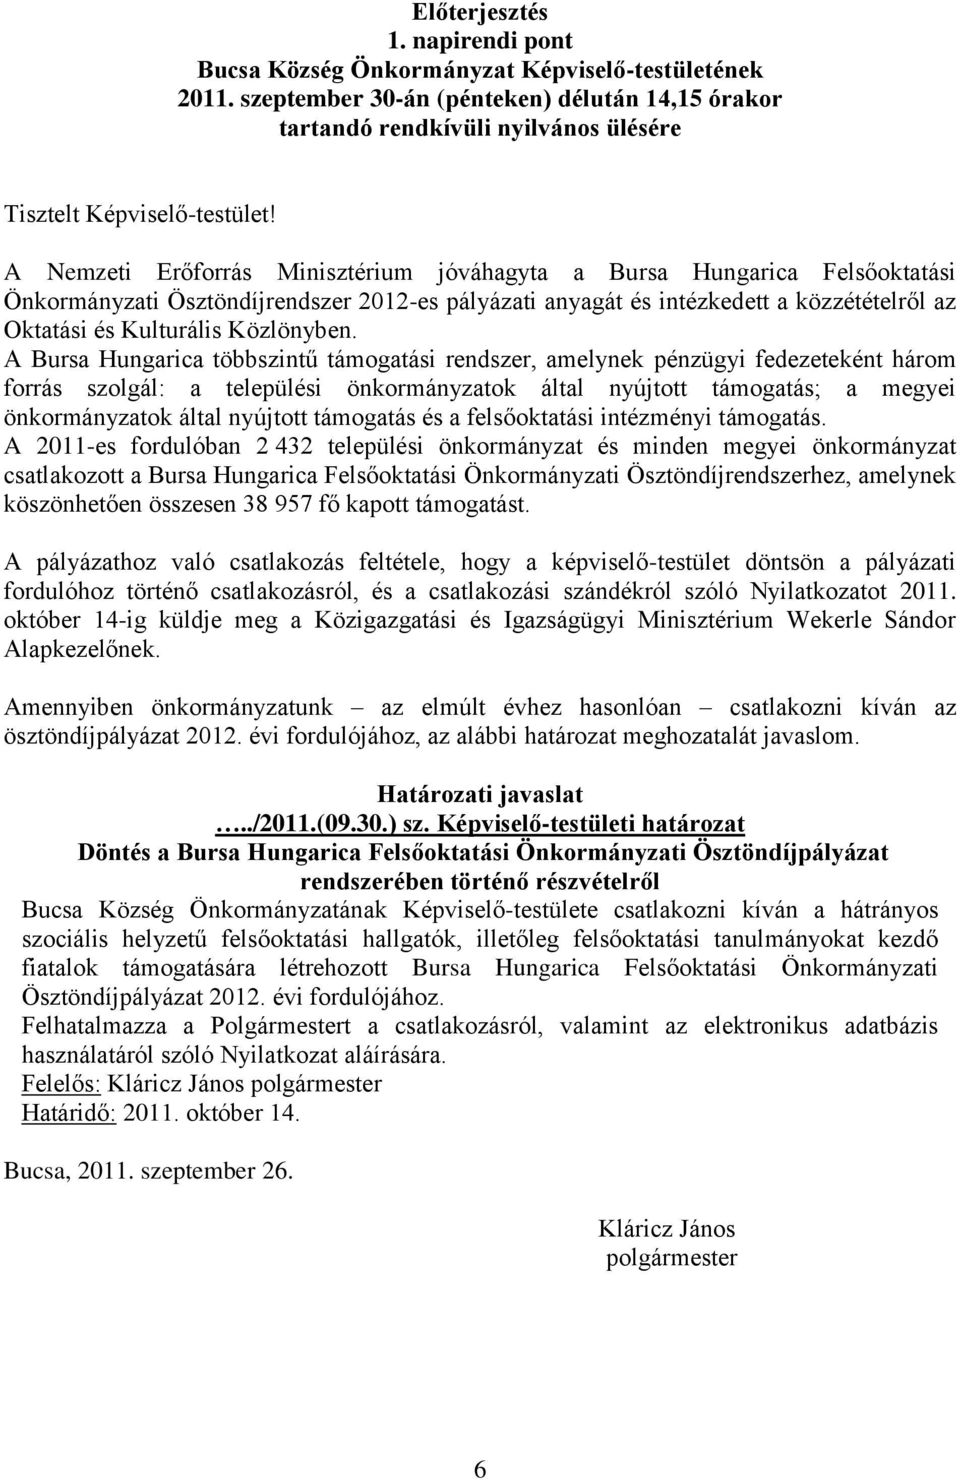 A Nemzeti Erőforrás Minisztérium jóváhagyta a Bursa Hungarica Felsőoktatási Önkormányzati Ösztöndíjrendszer 2012-es pályázati anyagát és intézkedett a közzétételről az Oktatási és Kulturális